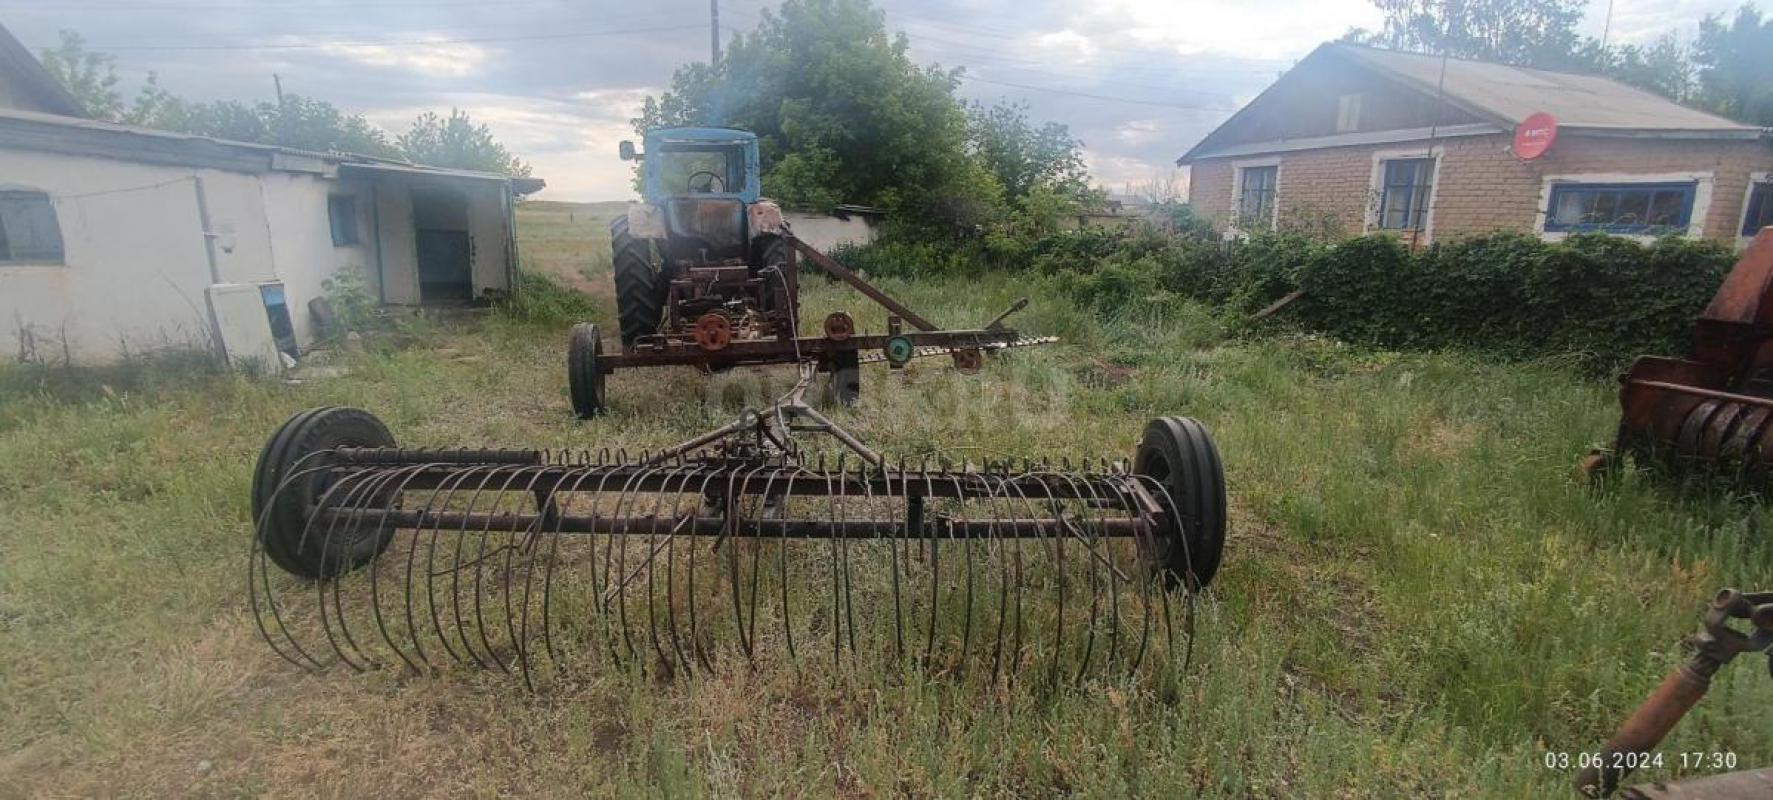 Трактор МТЗ на полном ходу с косилкой и граблями, находится в ясненьском районе, село каракуль - Орск